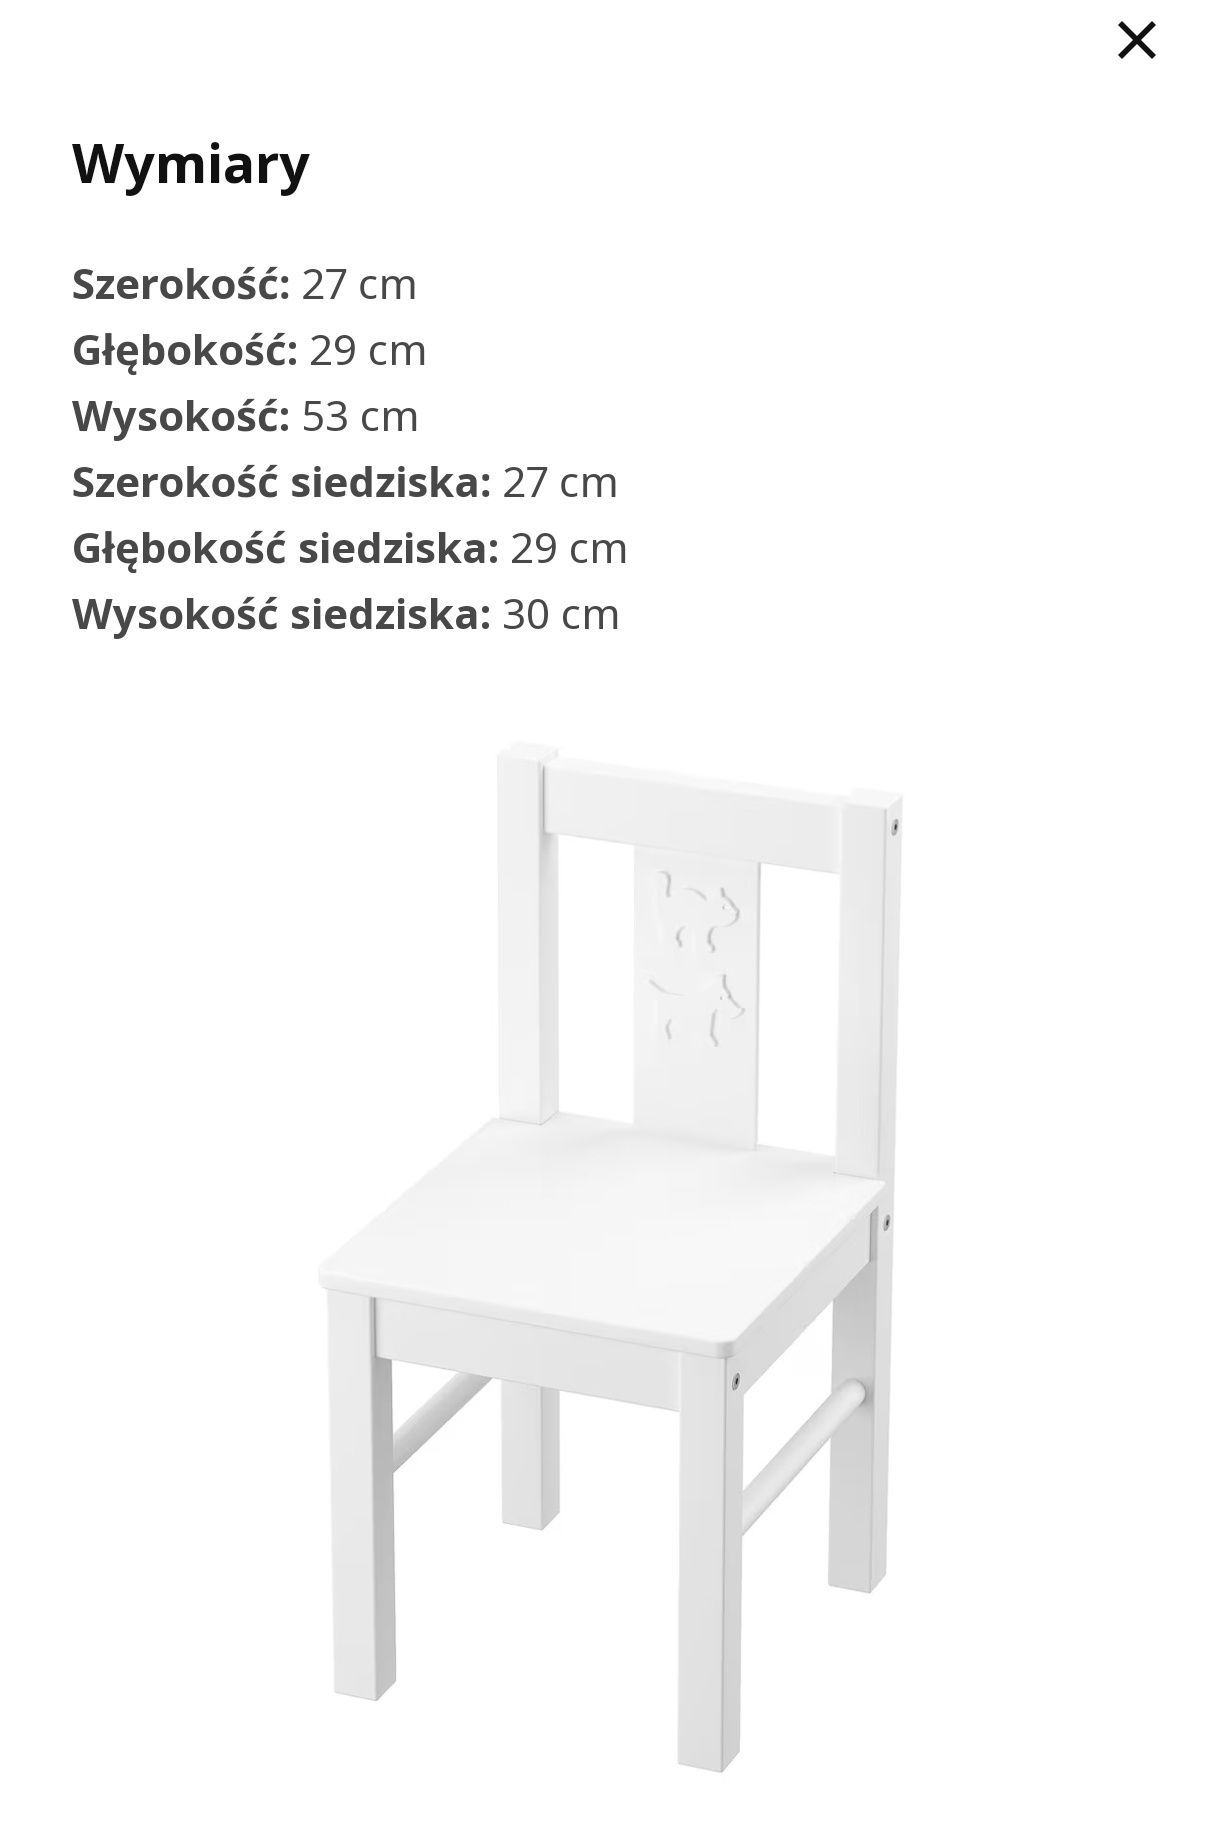 2 x krzesełko dziecięce Kritter Ikea